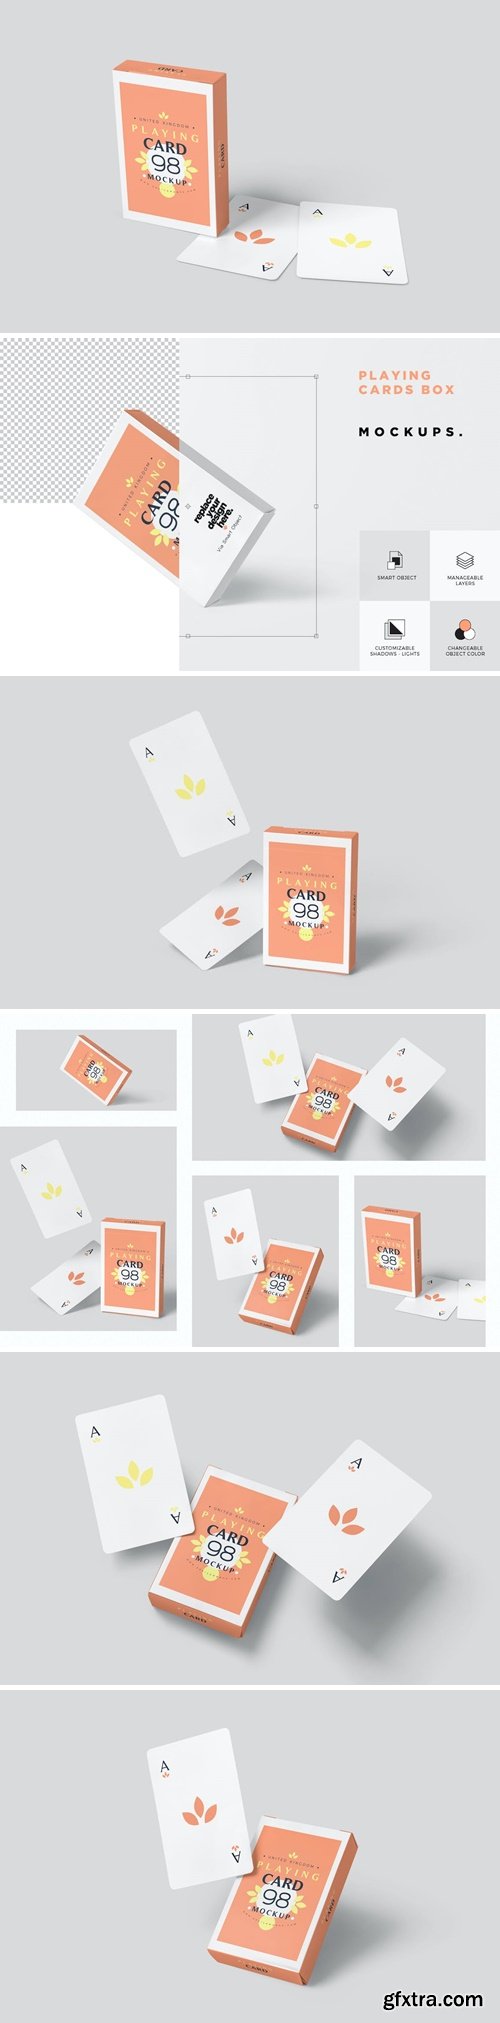 Playing Cards Box Mockups 3GLM64G